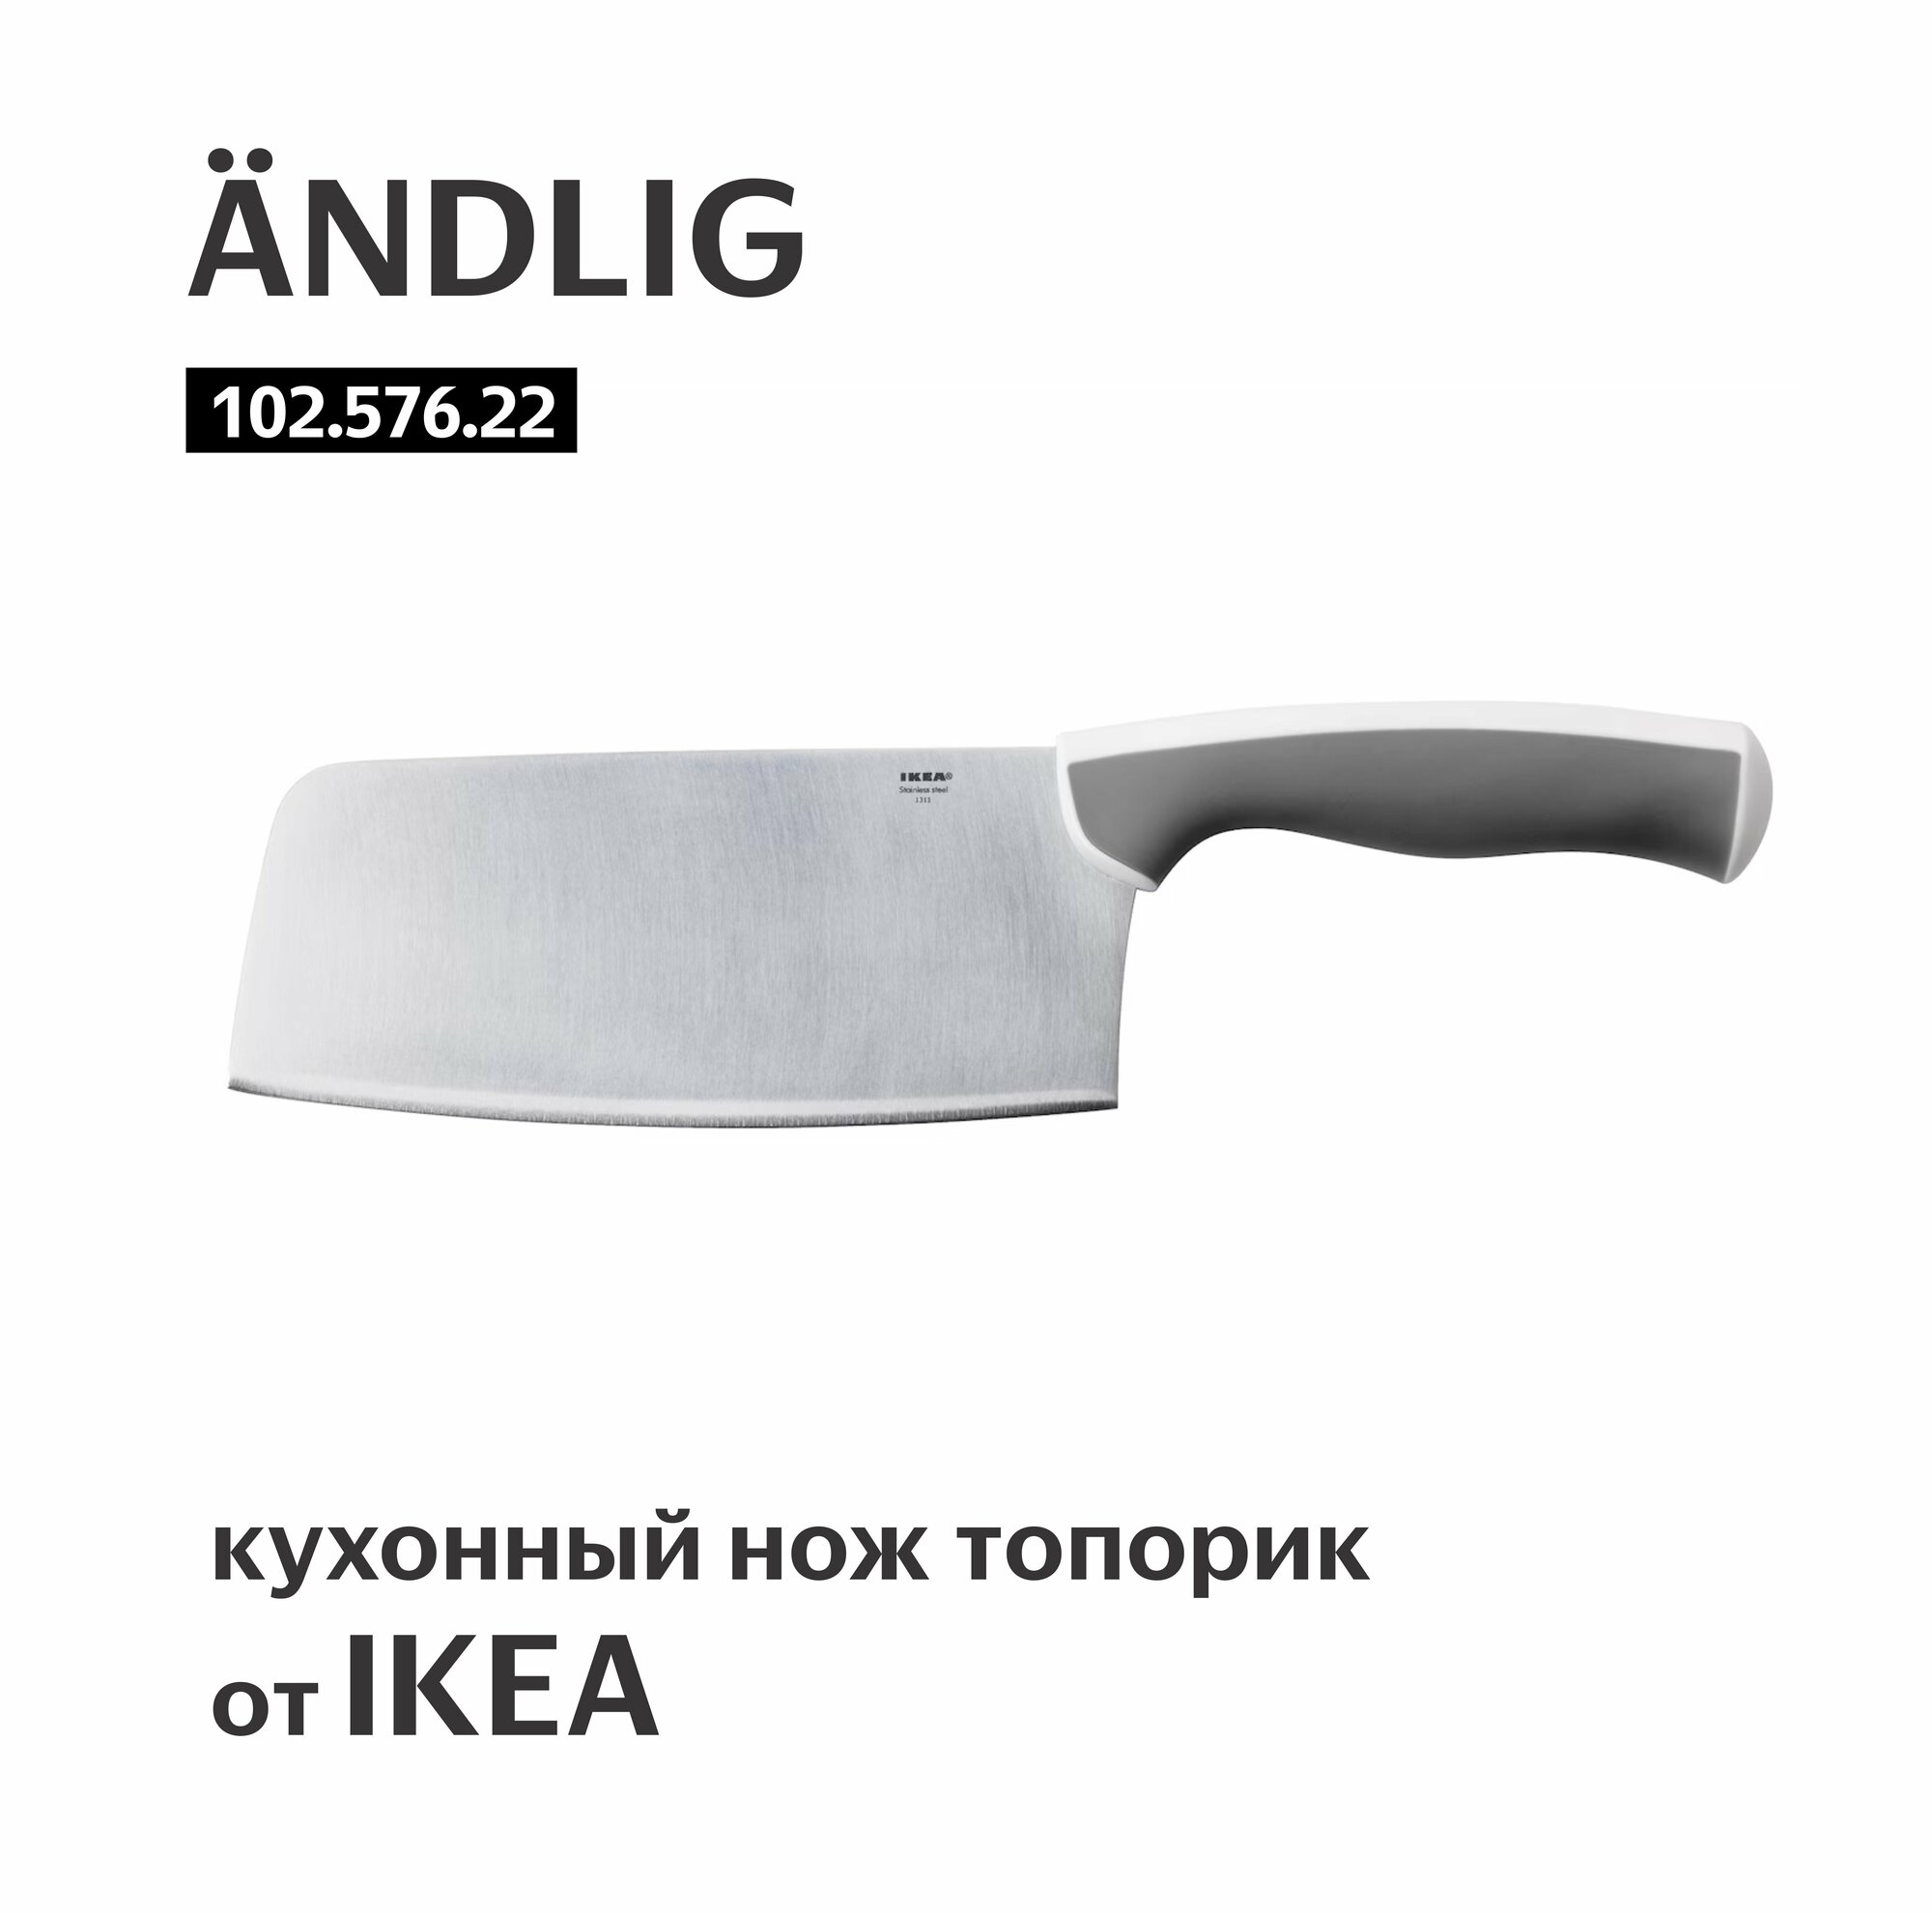 Нож топорик кухонный икеа ÄNDLIG лезвие 18 см арт.102.576.22